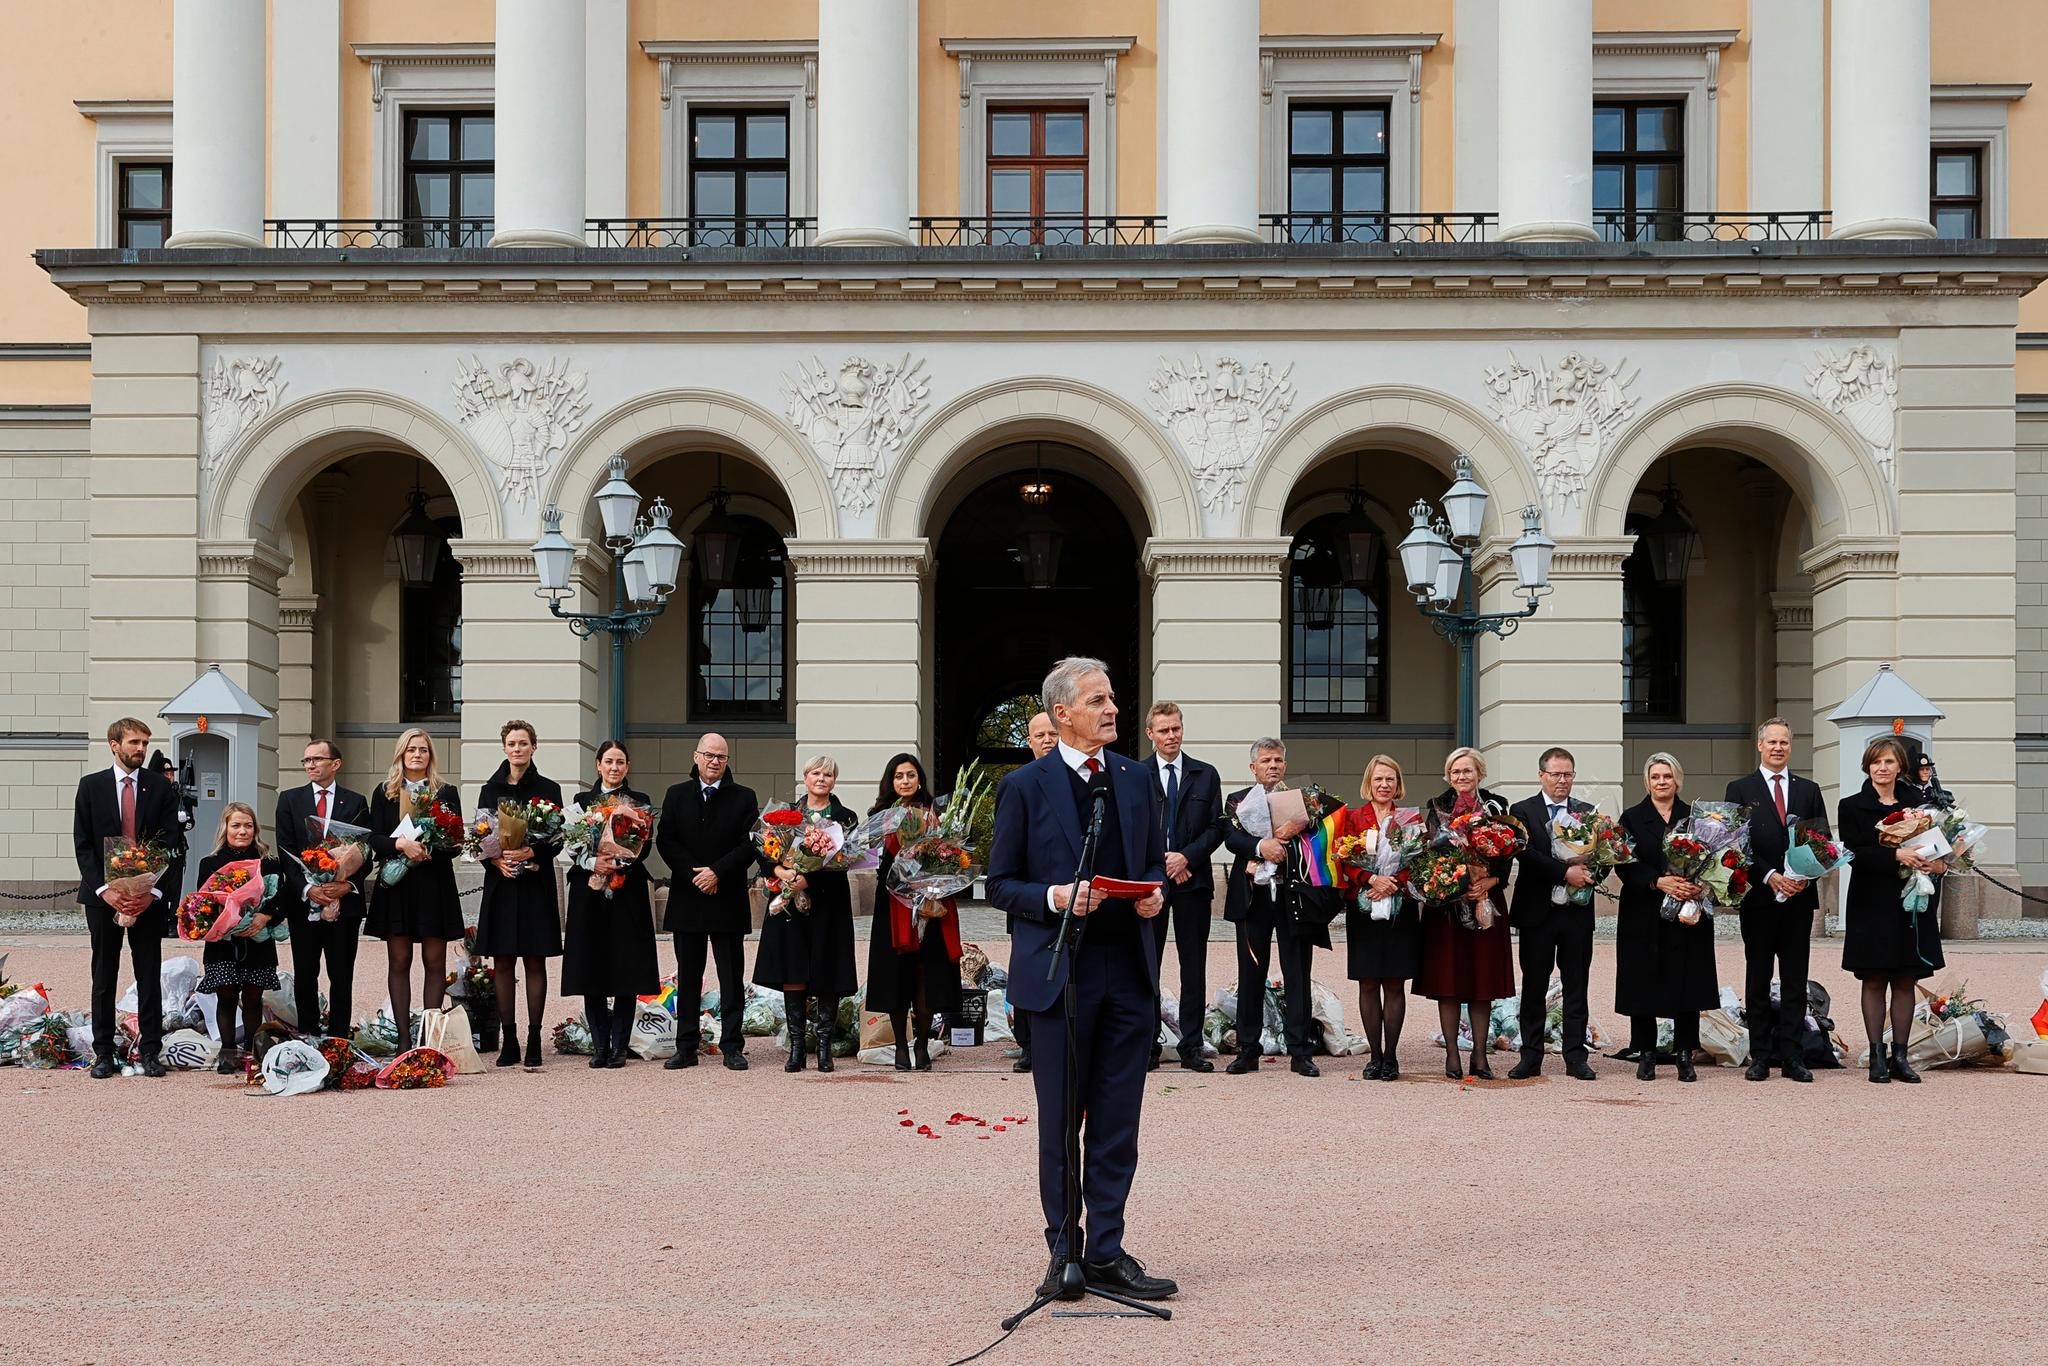 Støre hadde med seg to Utøya-overlevende da han presenterte regjeringens statsråder på Slottsplassen torsdag ettermiddag. 